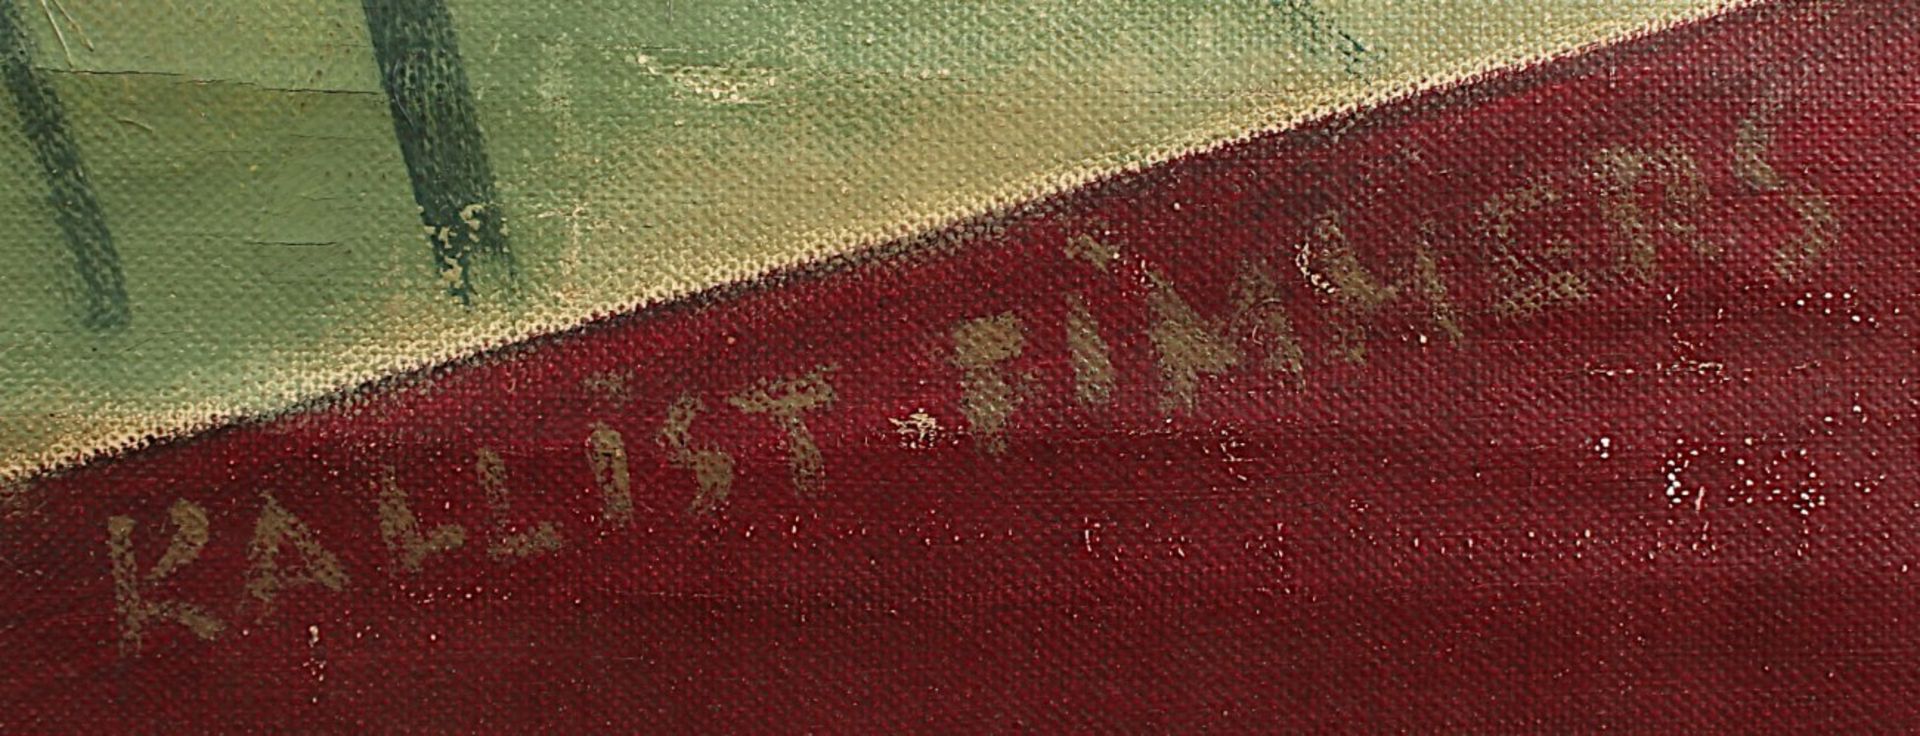 FIMMERS, Kallist Lode (1906-1969), "Lohn der Arbeit", Öl/Lwd., 200 x 149, besch., unten rechts - Bild 2 aus 3